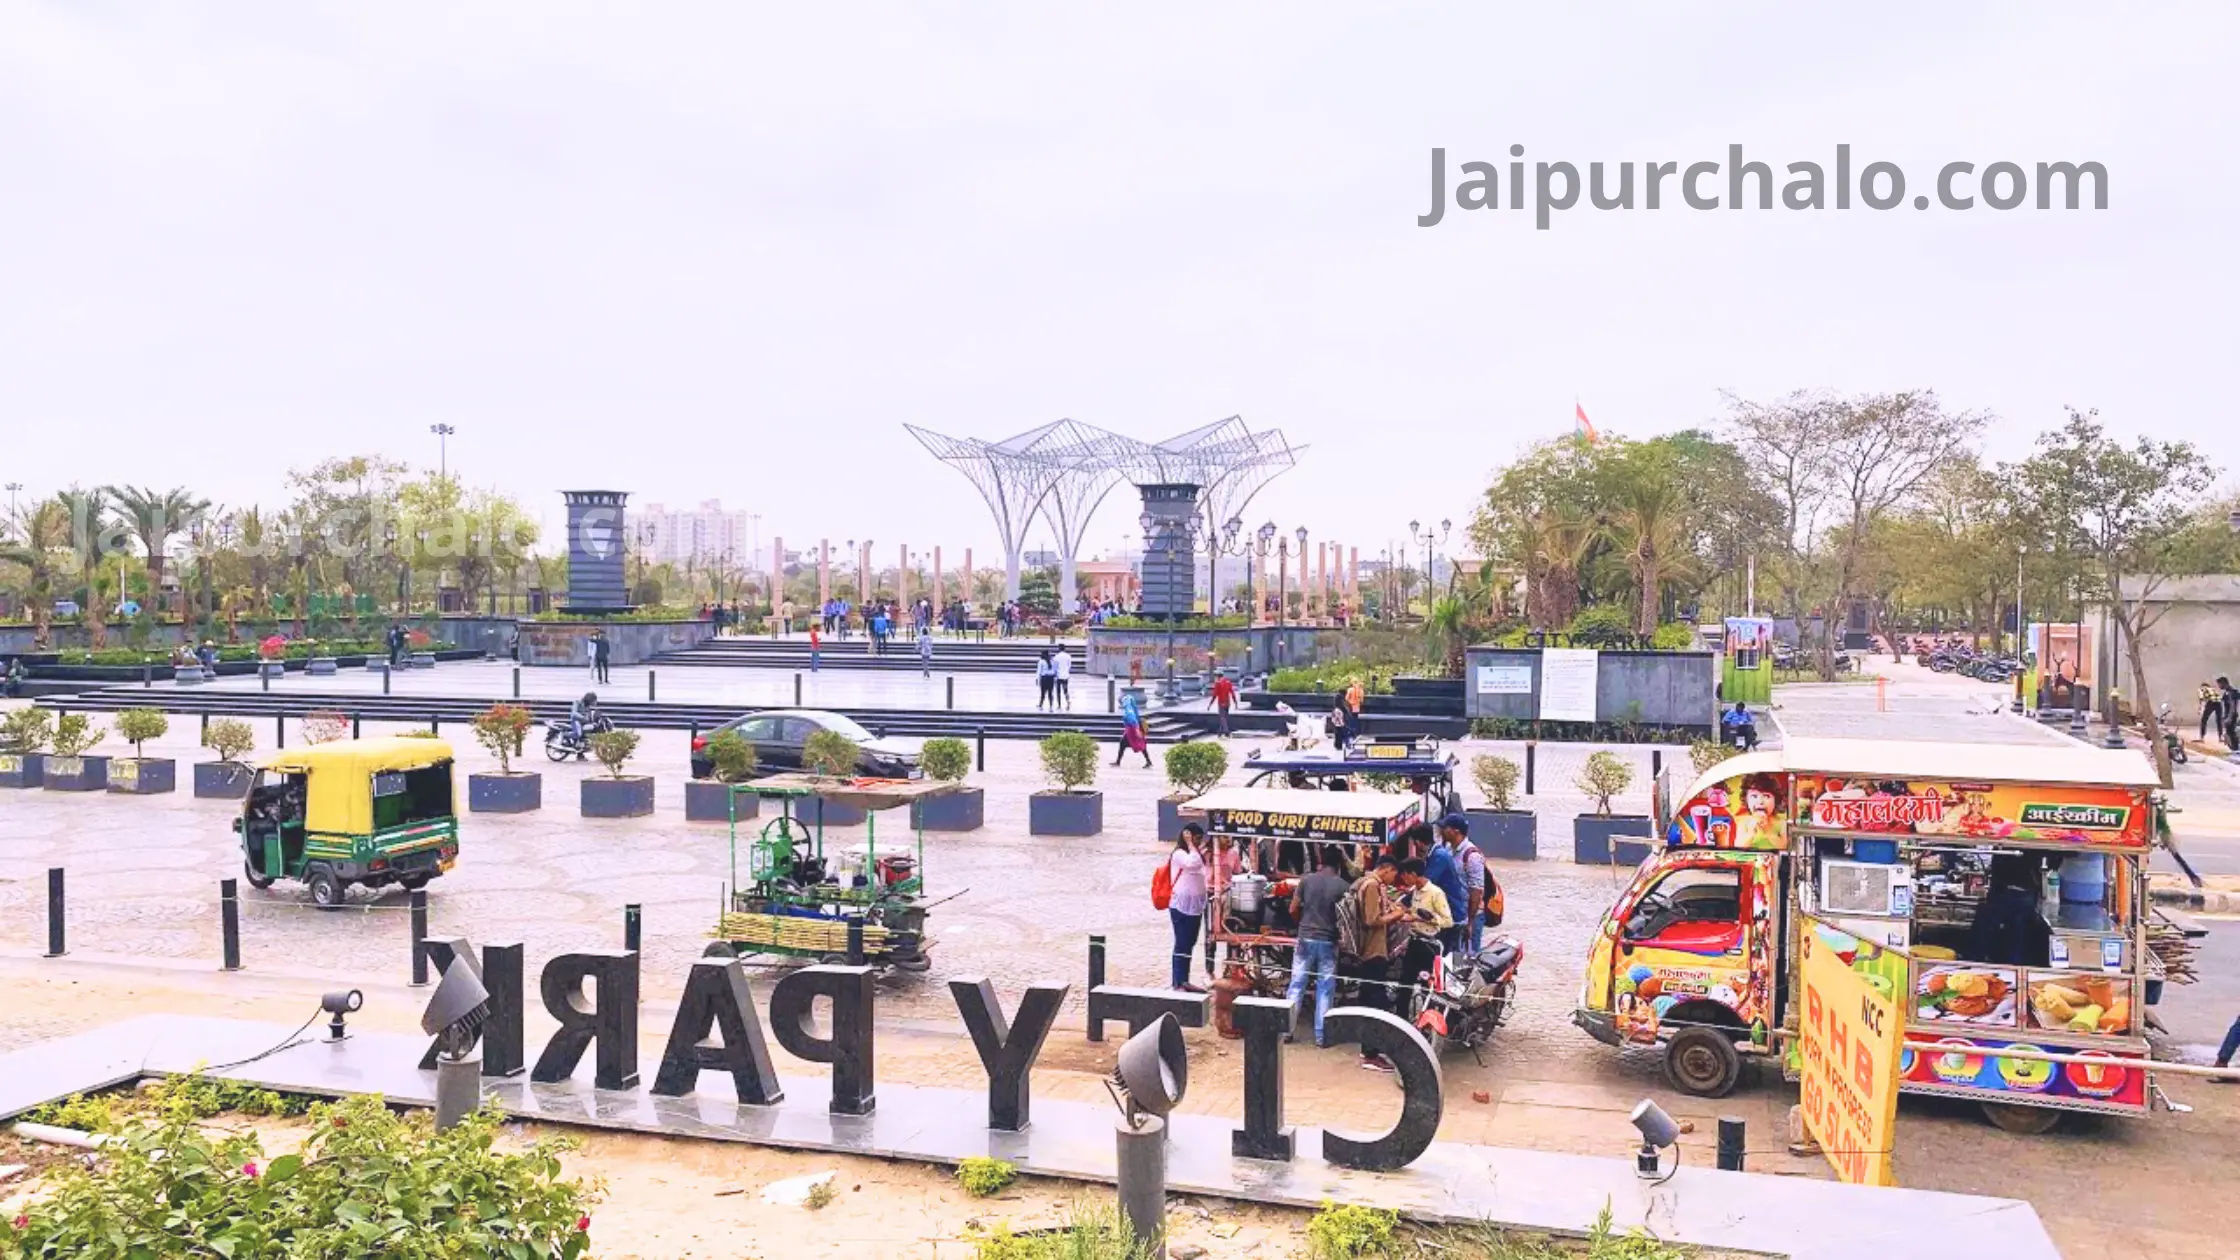 City Park Jaipur Mansarovar – ticket price, timings, address